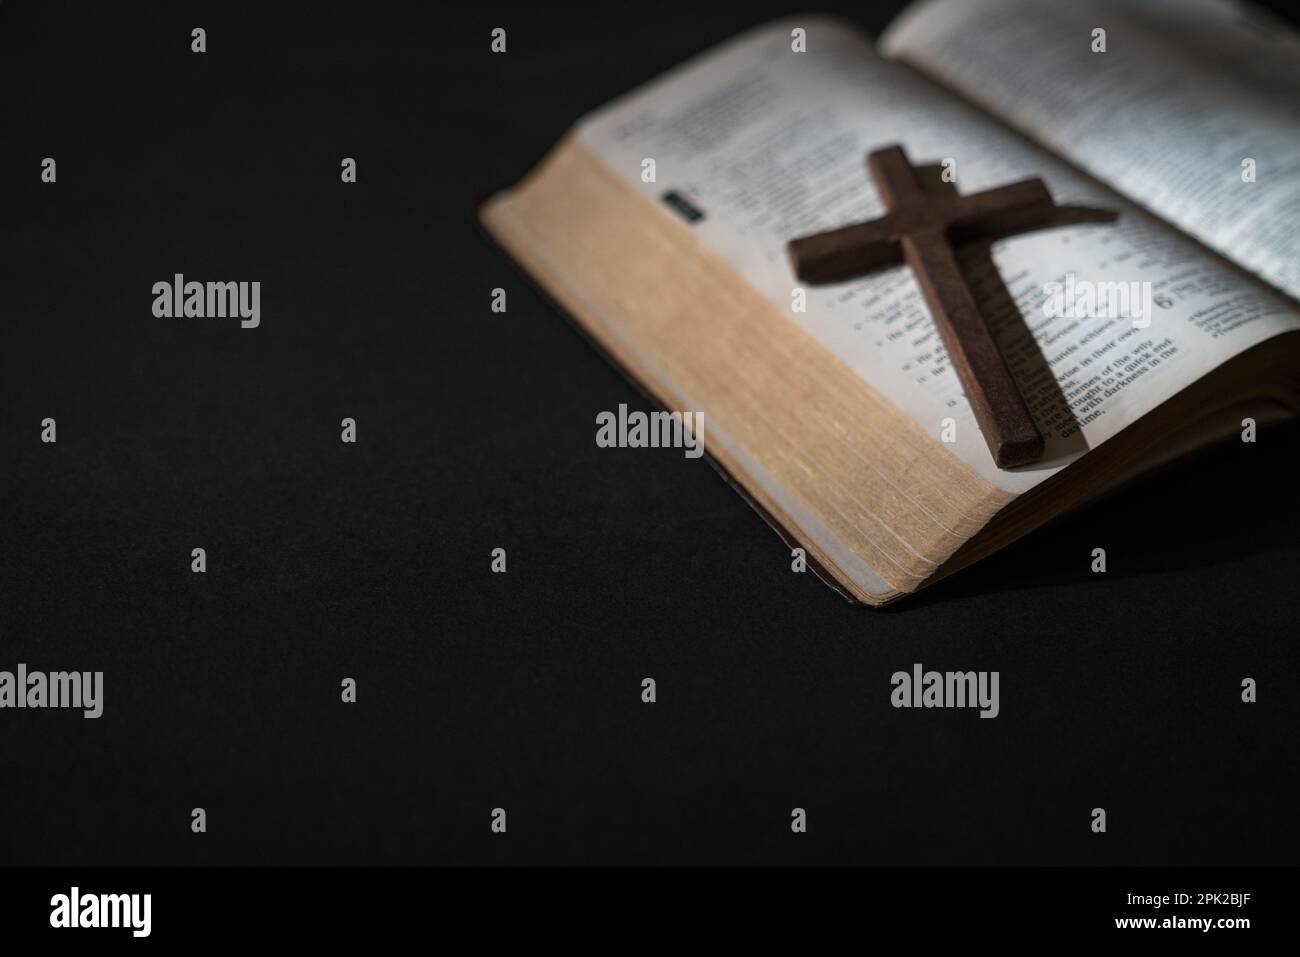 Croce crocifissa in legno sulla cima di una Sacra Bibbia aperta. Messa a fuoco selezionata, copia spazio. Foto Stock